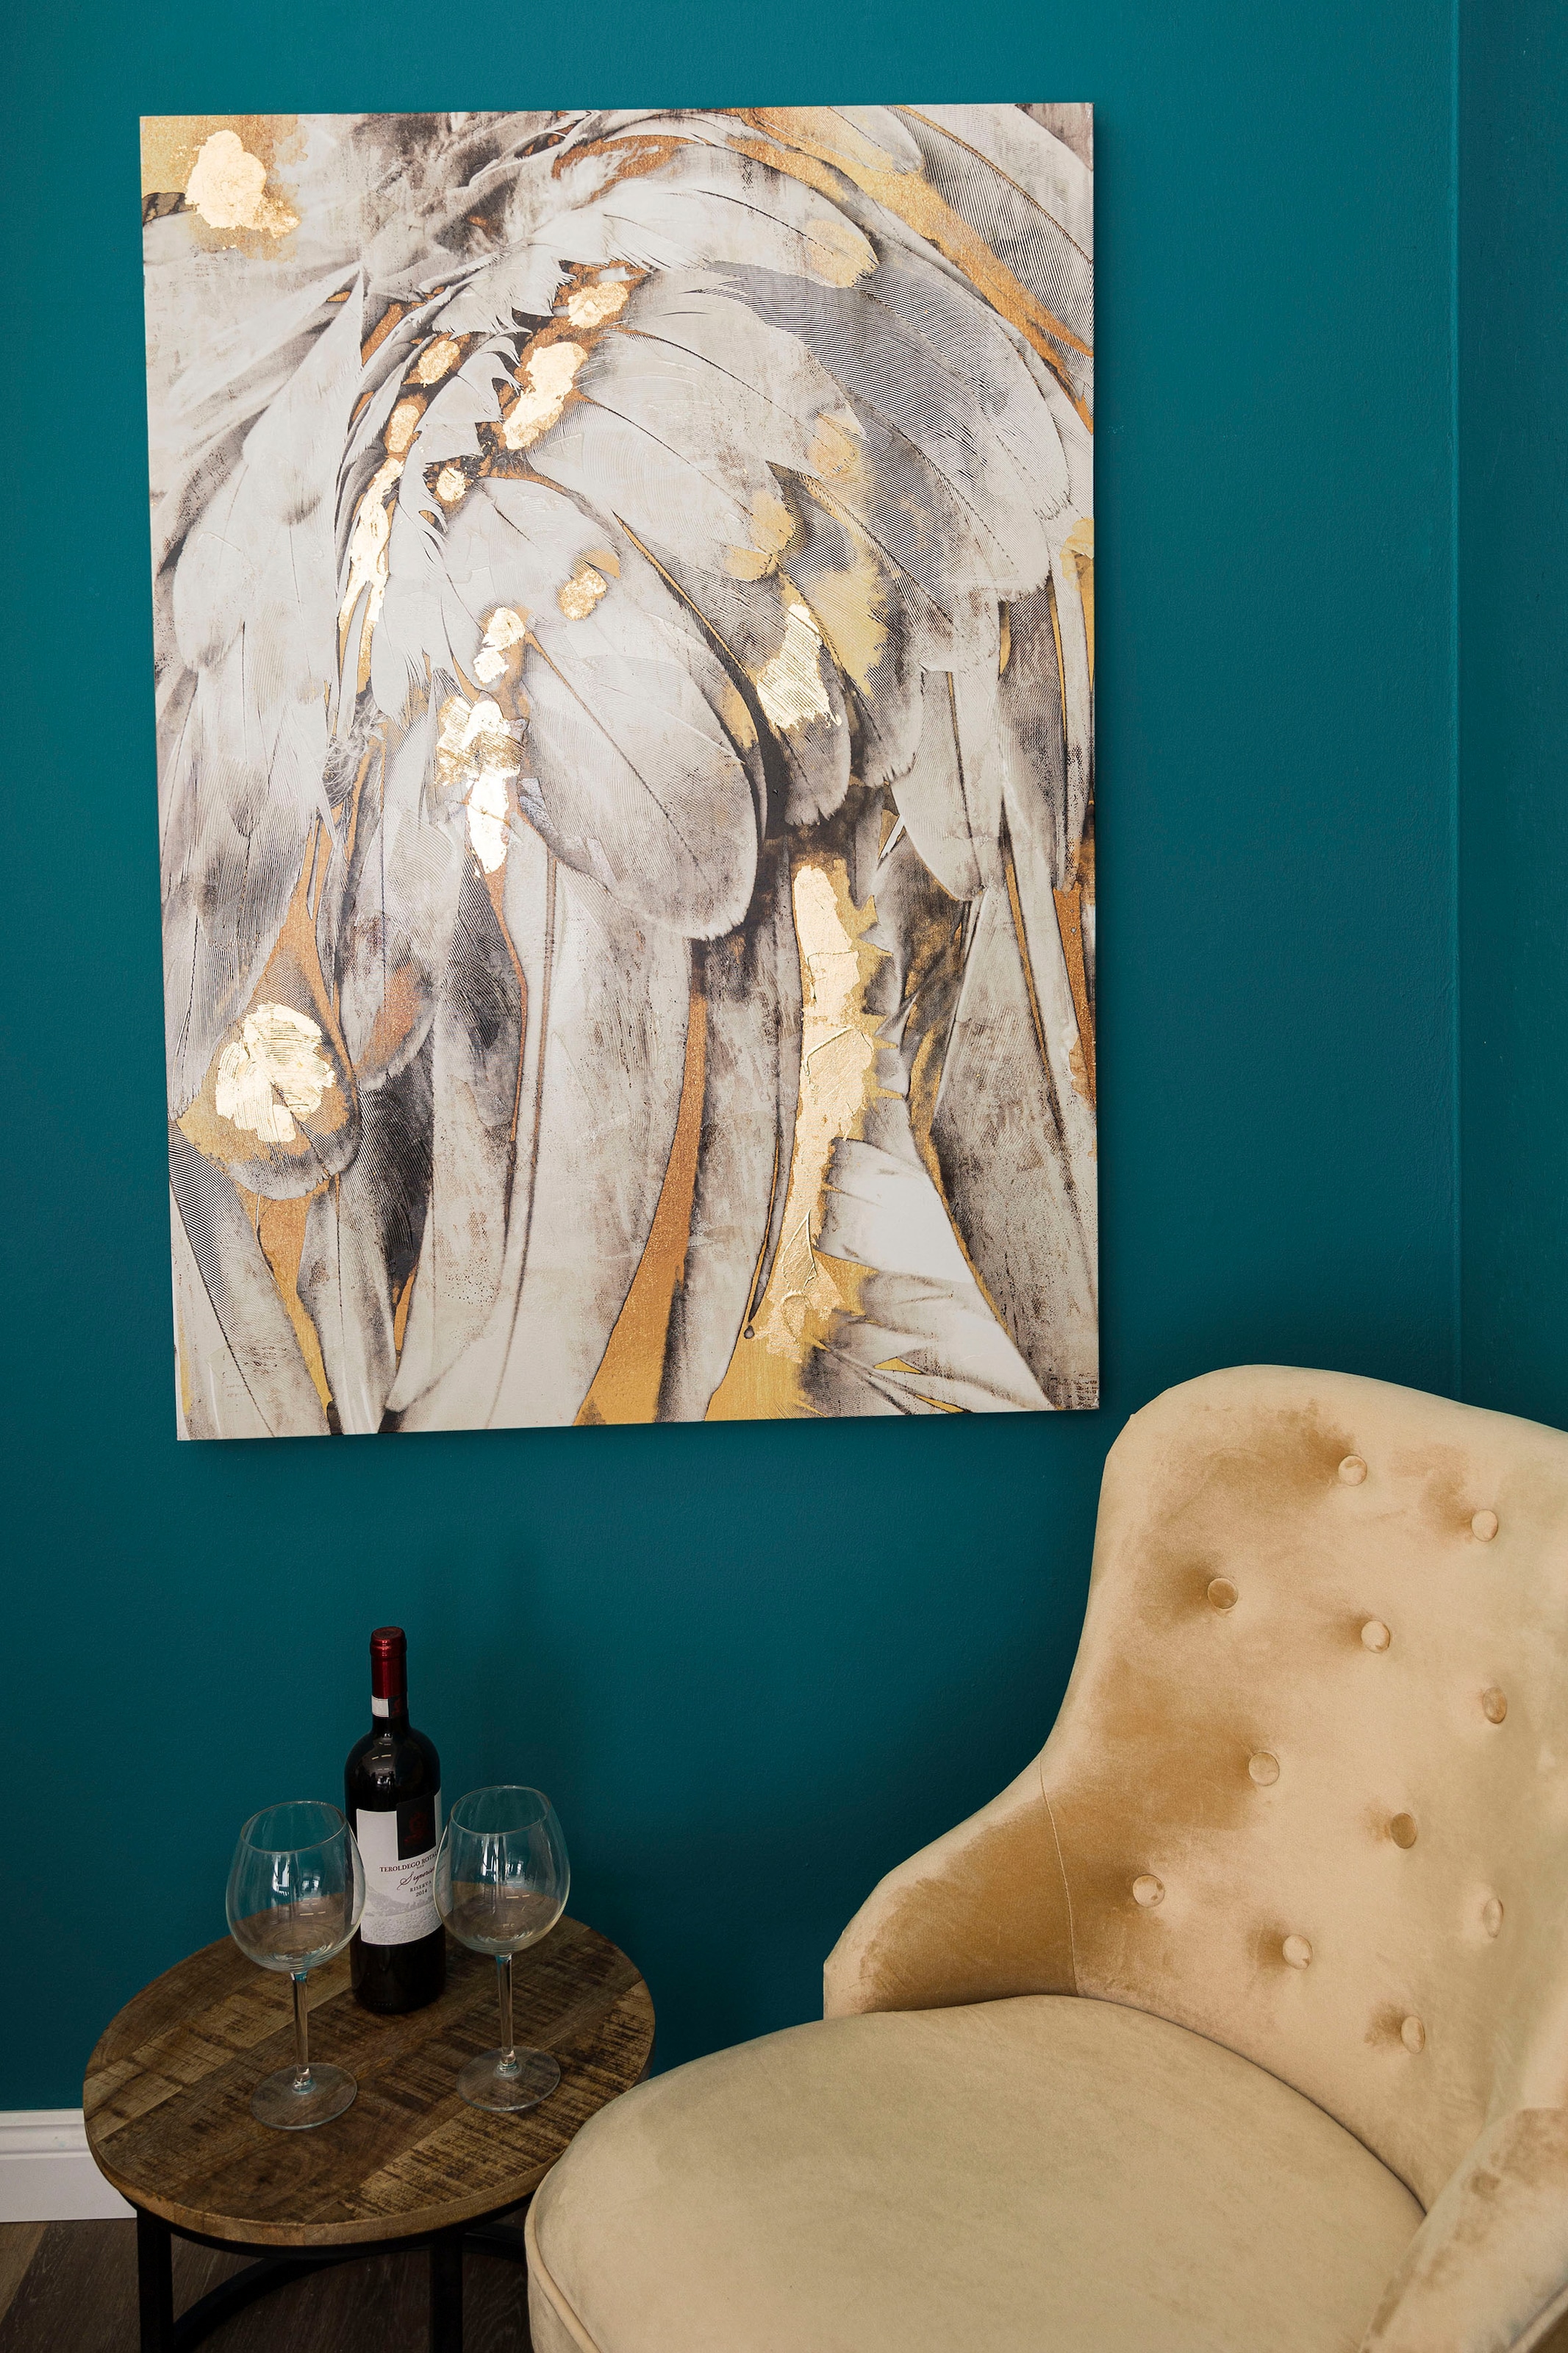 Myflair Möbel & Accessoires Ölbild »Gemälde Federn, weiss/goldfarben«, Bild auf Leinwand, 80x120 cm, Wohnzimmer